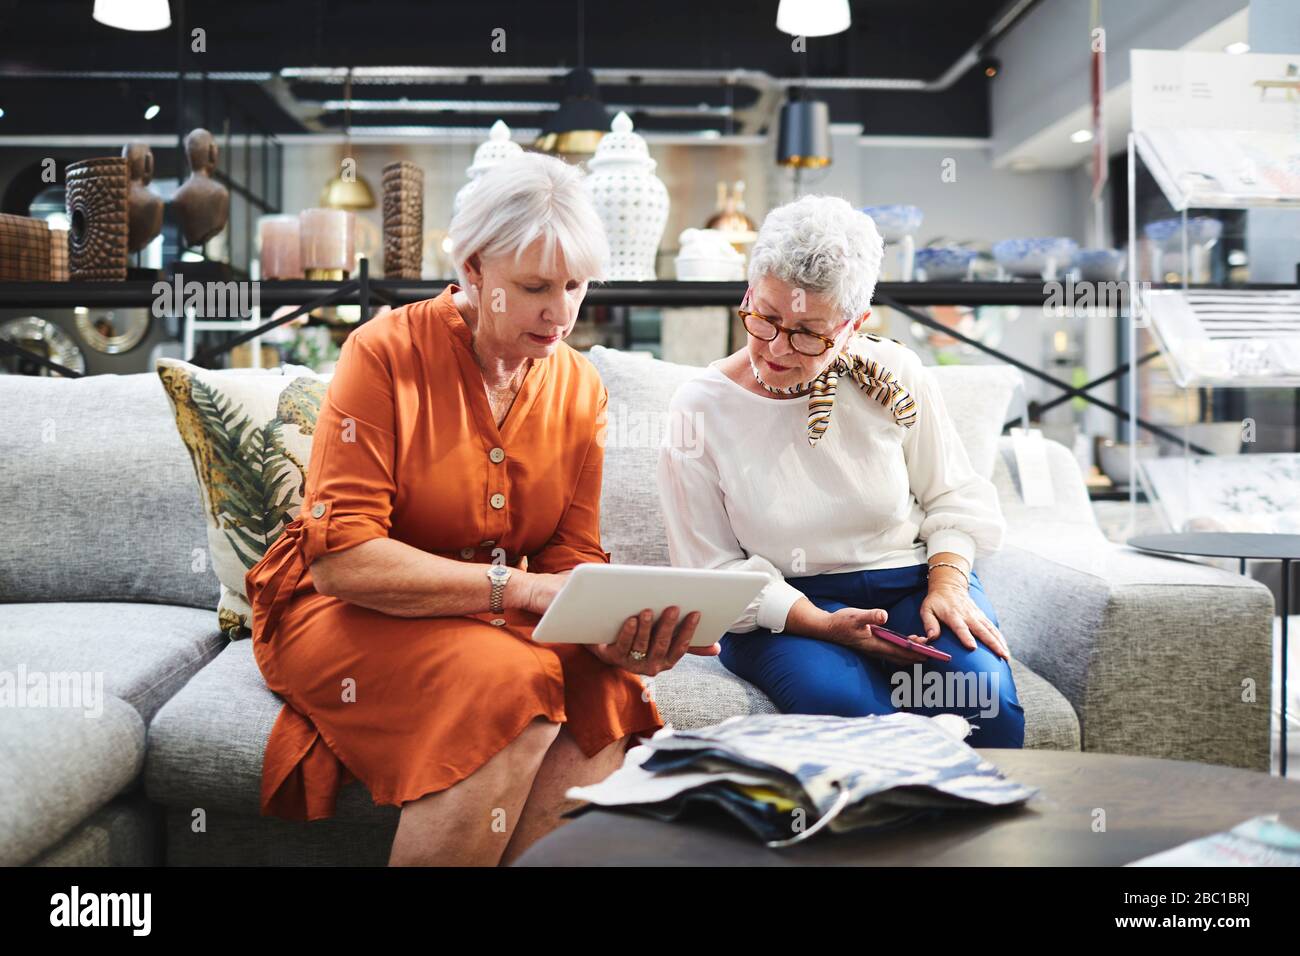 Femmes âgées avec tablette numérique regardant les nuances de tissu sur le canapé dans le magasin de meubles Banque D'Images